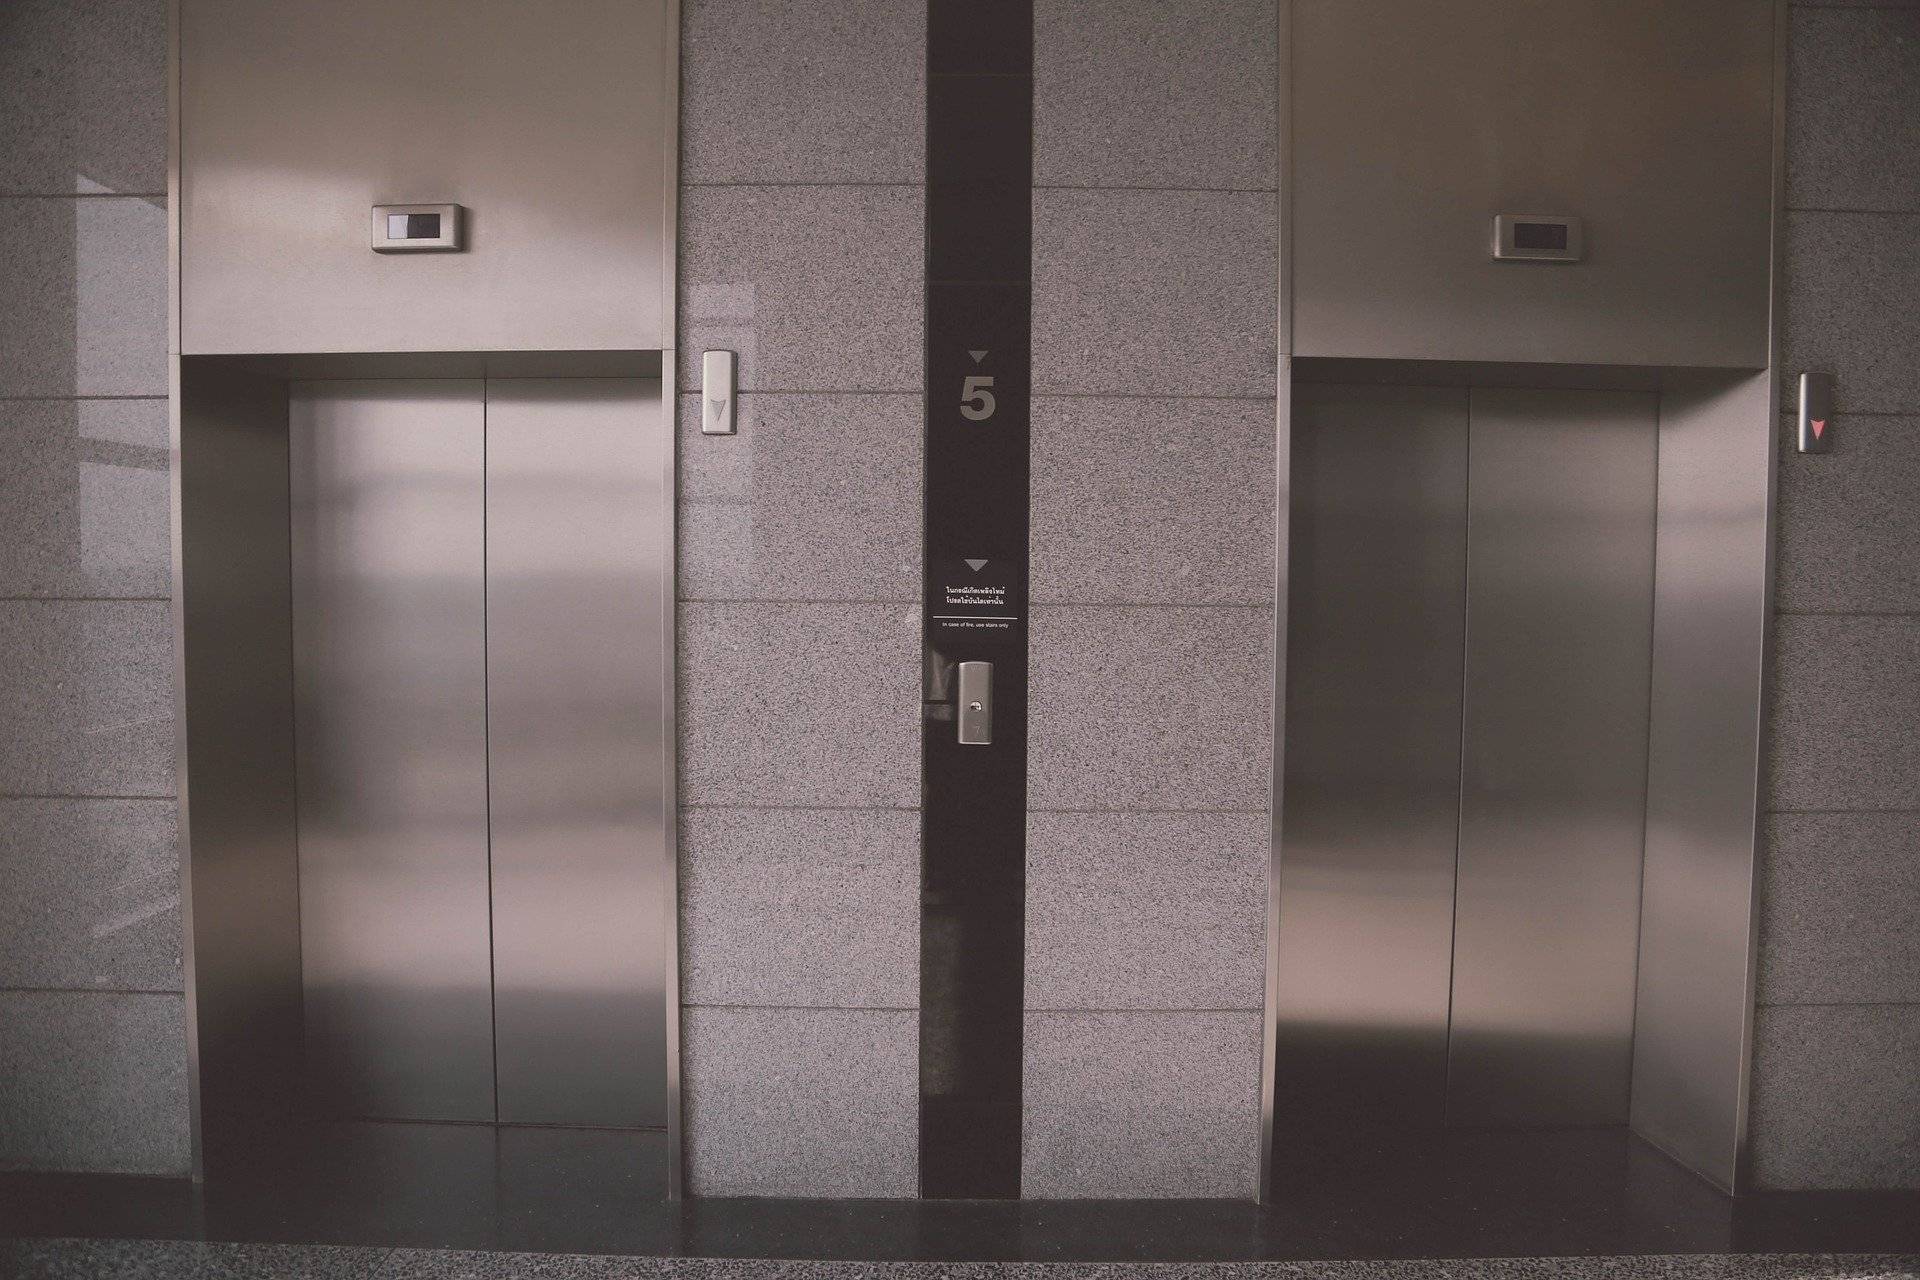  In Fahrstühlen kann der nötige Abstand zu anderen kaum eingehalten werden. Daher bittet ein Neusser: „Benutzt den Aufzug einzeln!“ 